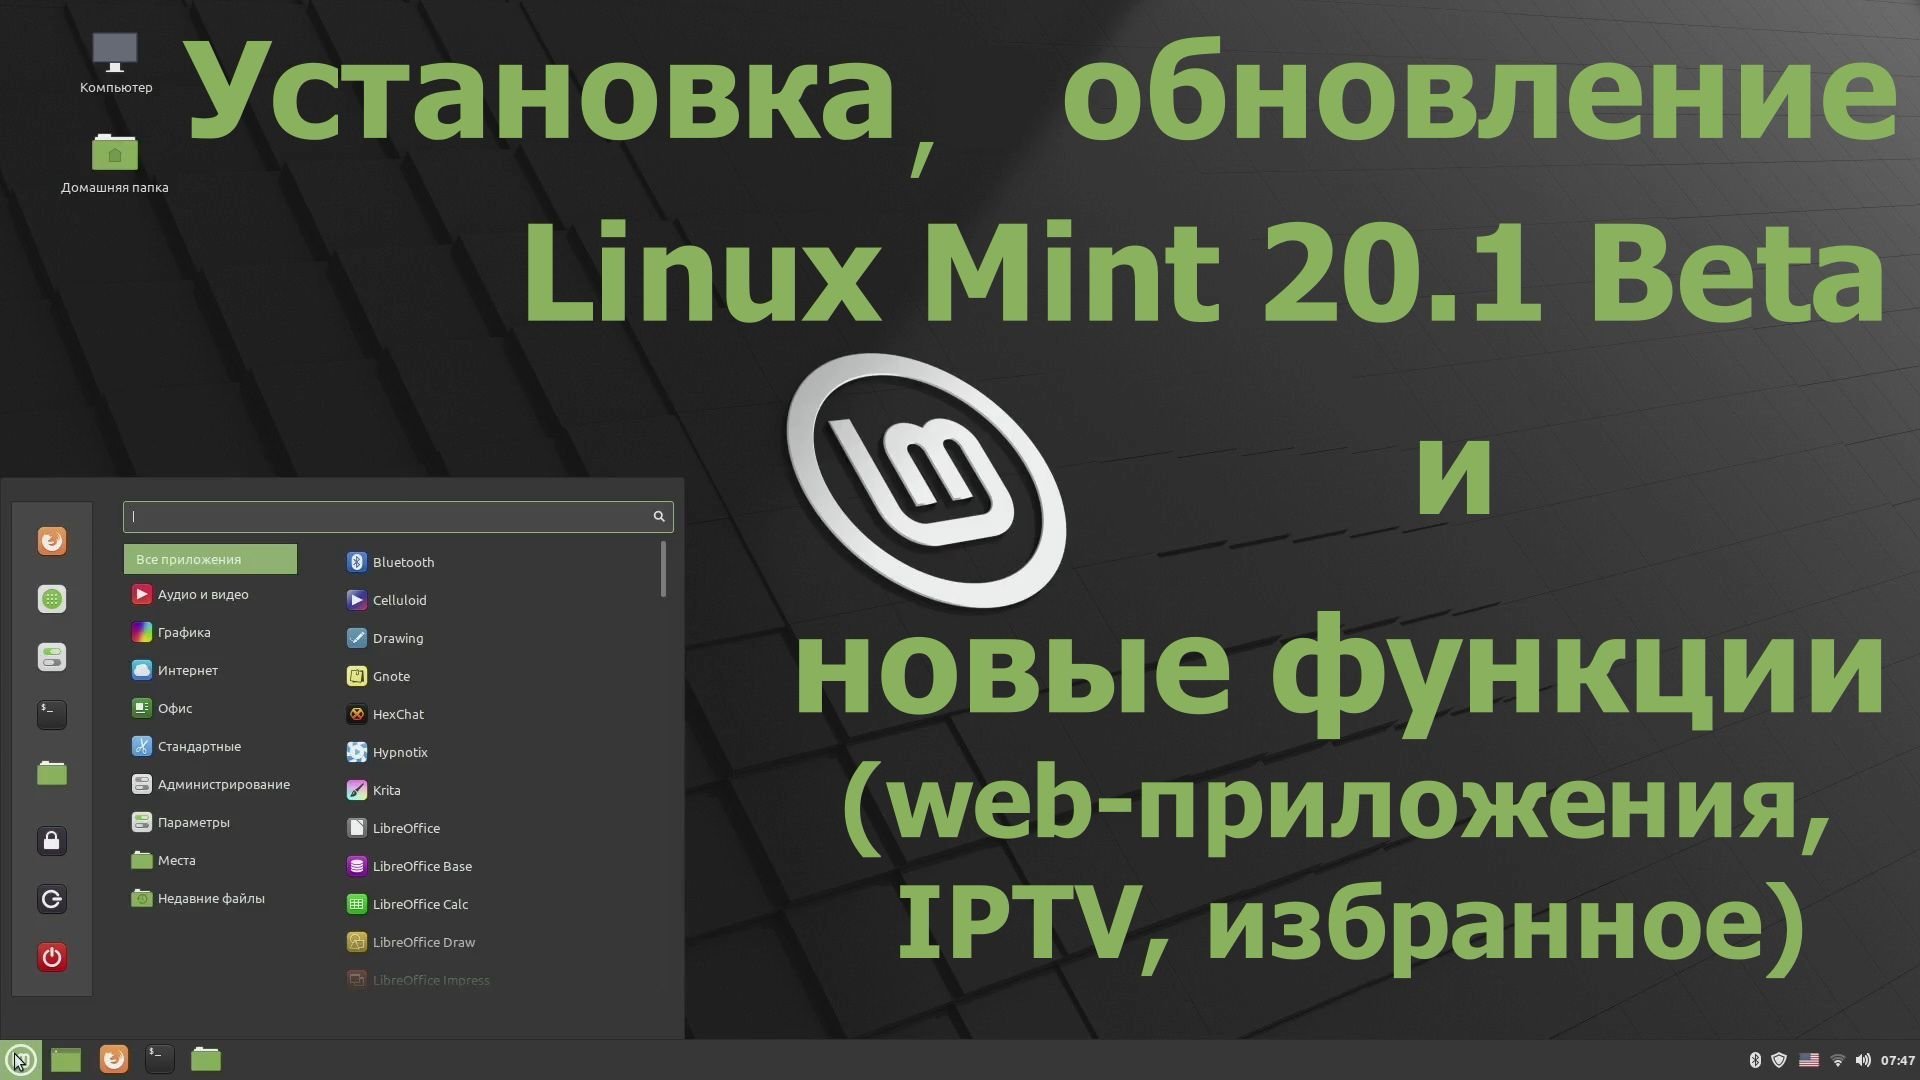 Дистрибутив Mint 20.1 Beta (Cinnamon) (Установка, обновление и новые функции) (Декабрь 2020)